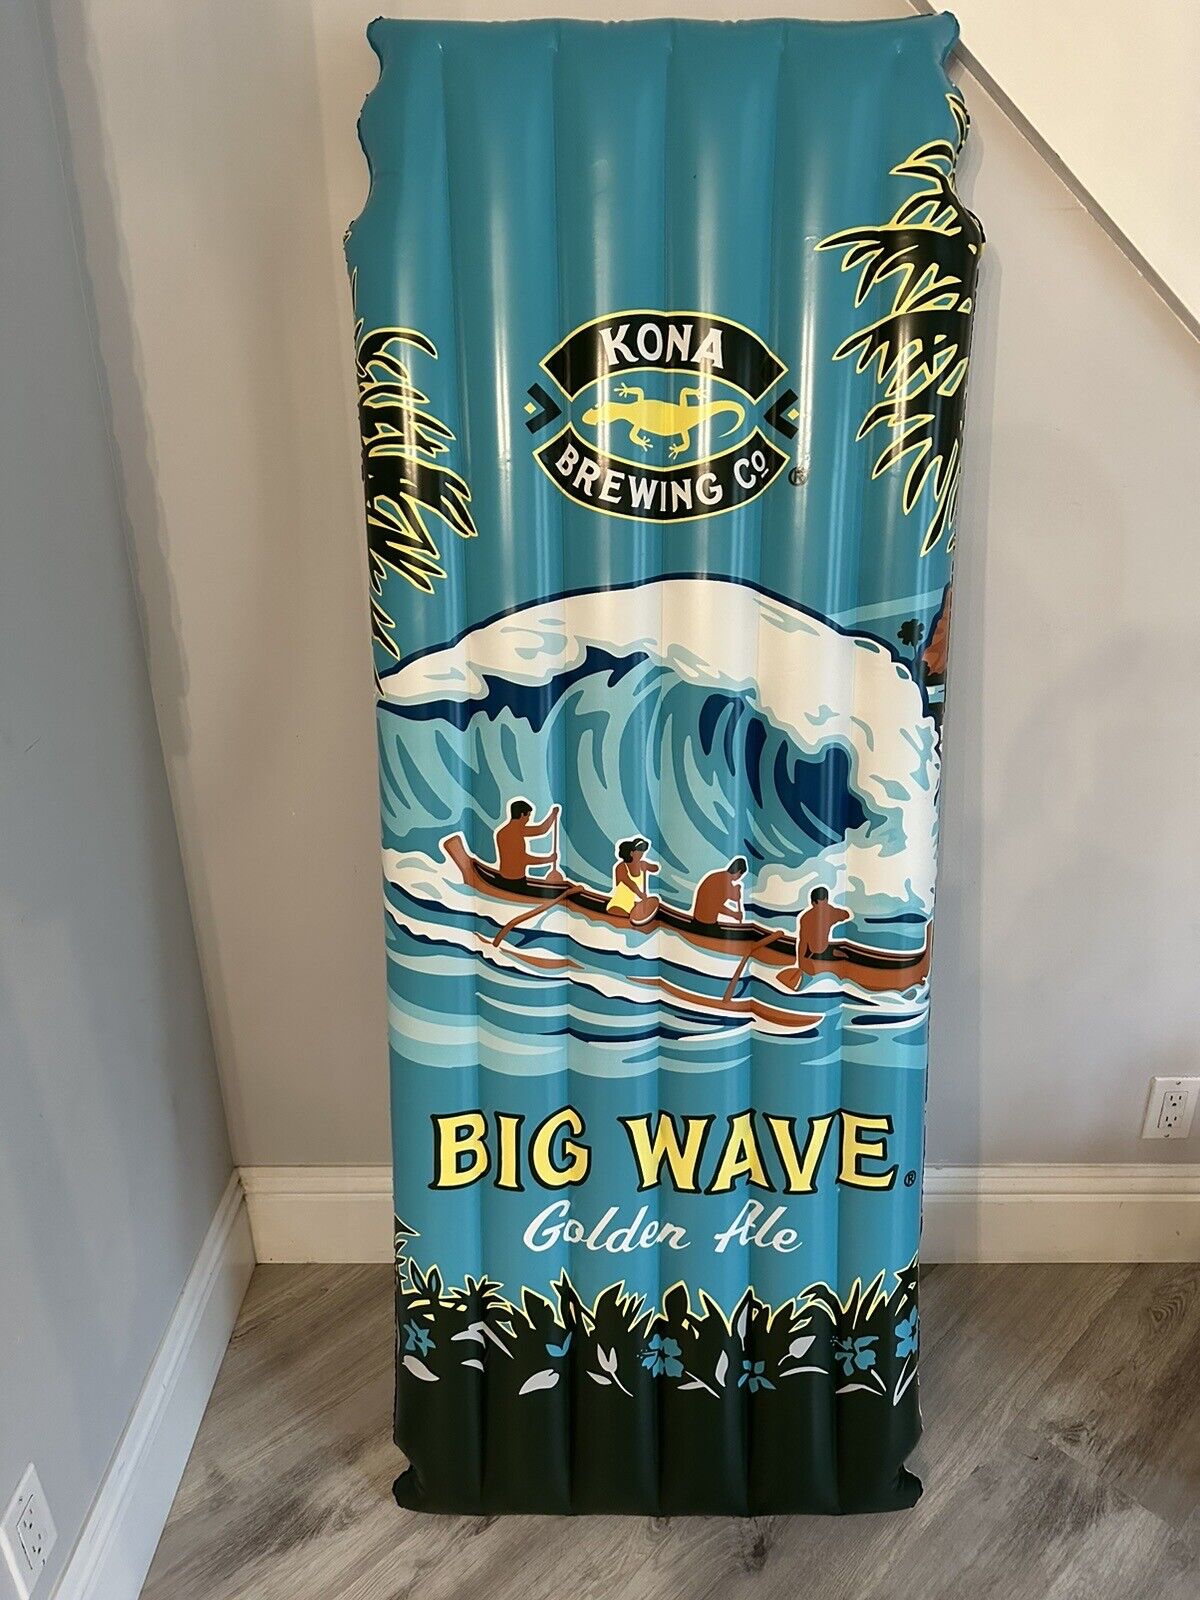 KONA BREWING Company 66” Inflatable Pool Raft Hawaii Beer Big Wave Golden Ale